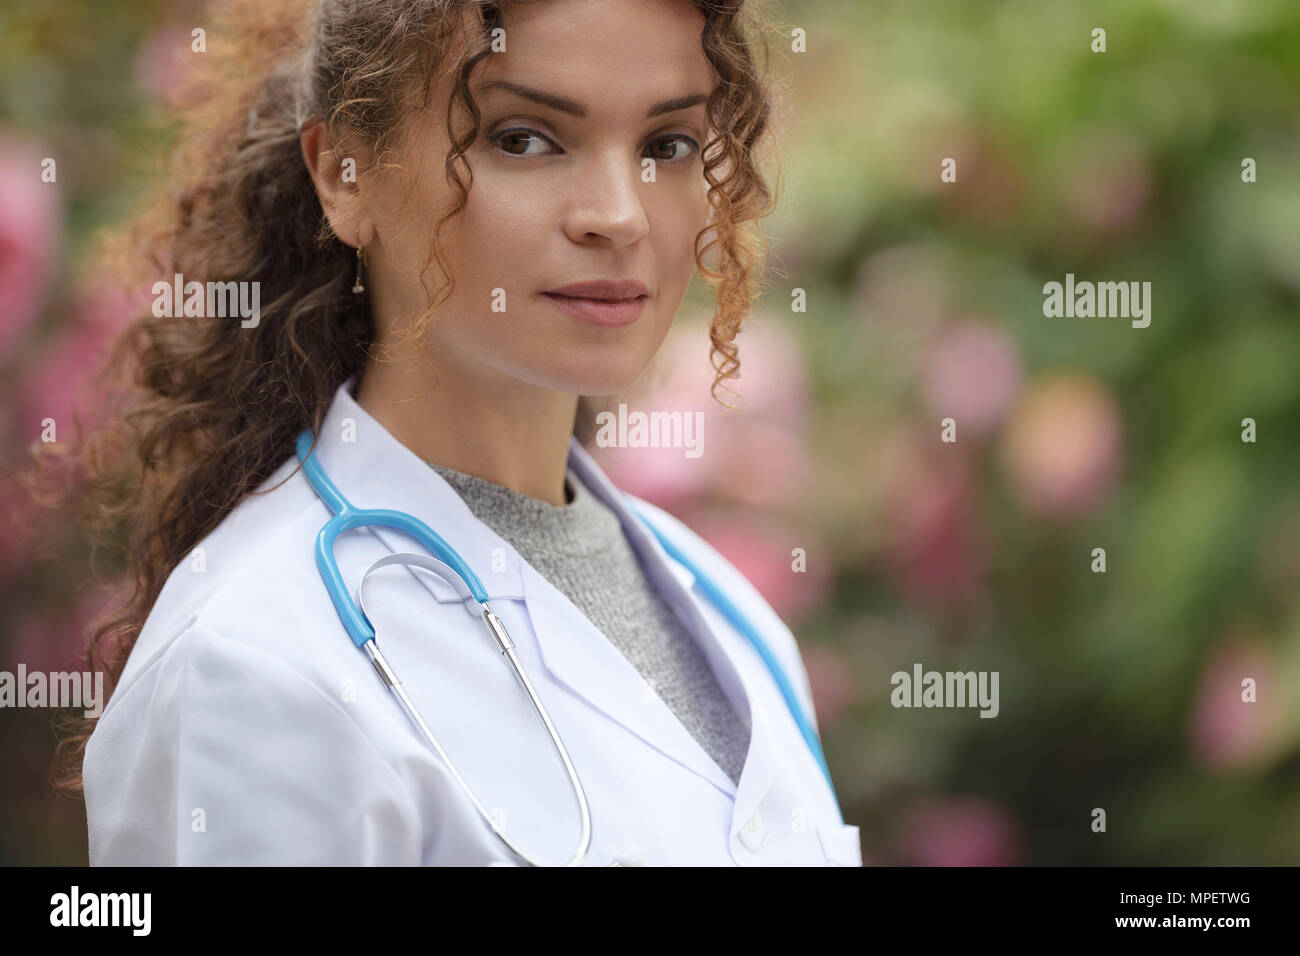 Ritratto di una giovane donna, medico, medico, medico in camice in naturale delle impostazioni all'aperto Foto Stock